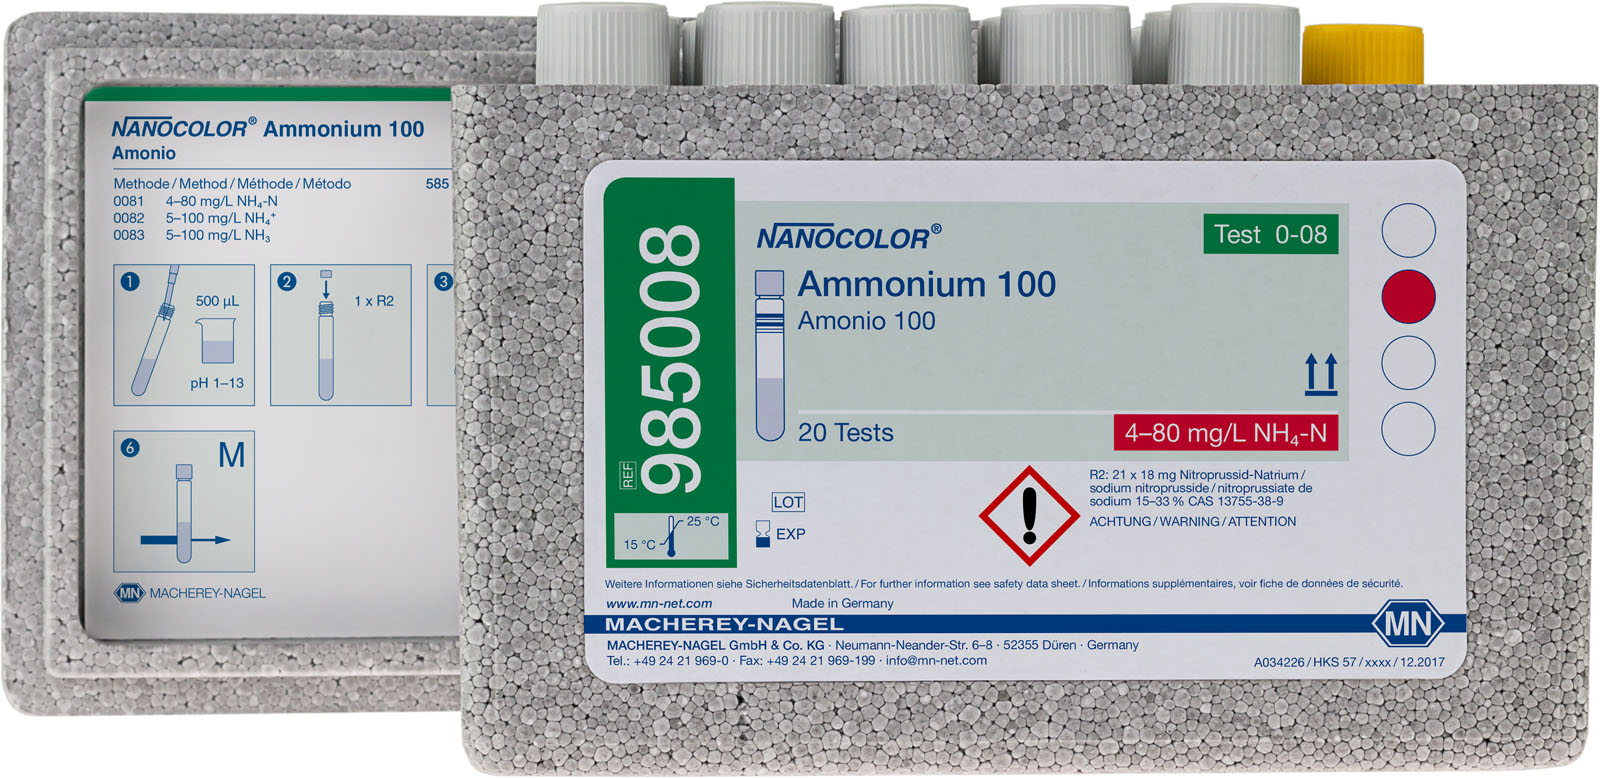 RUK NANOCOLOR- Ammonium 100